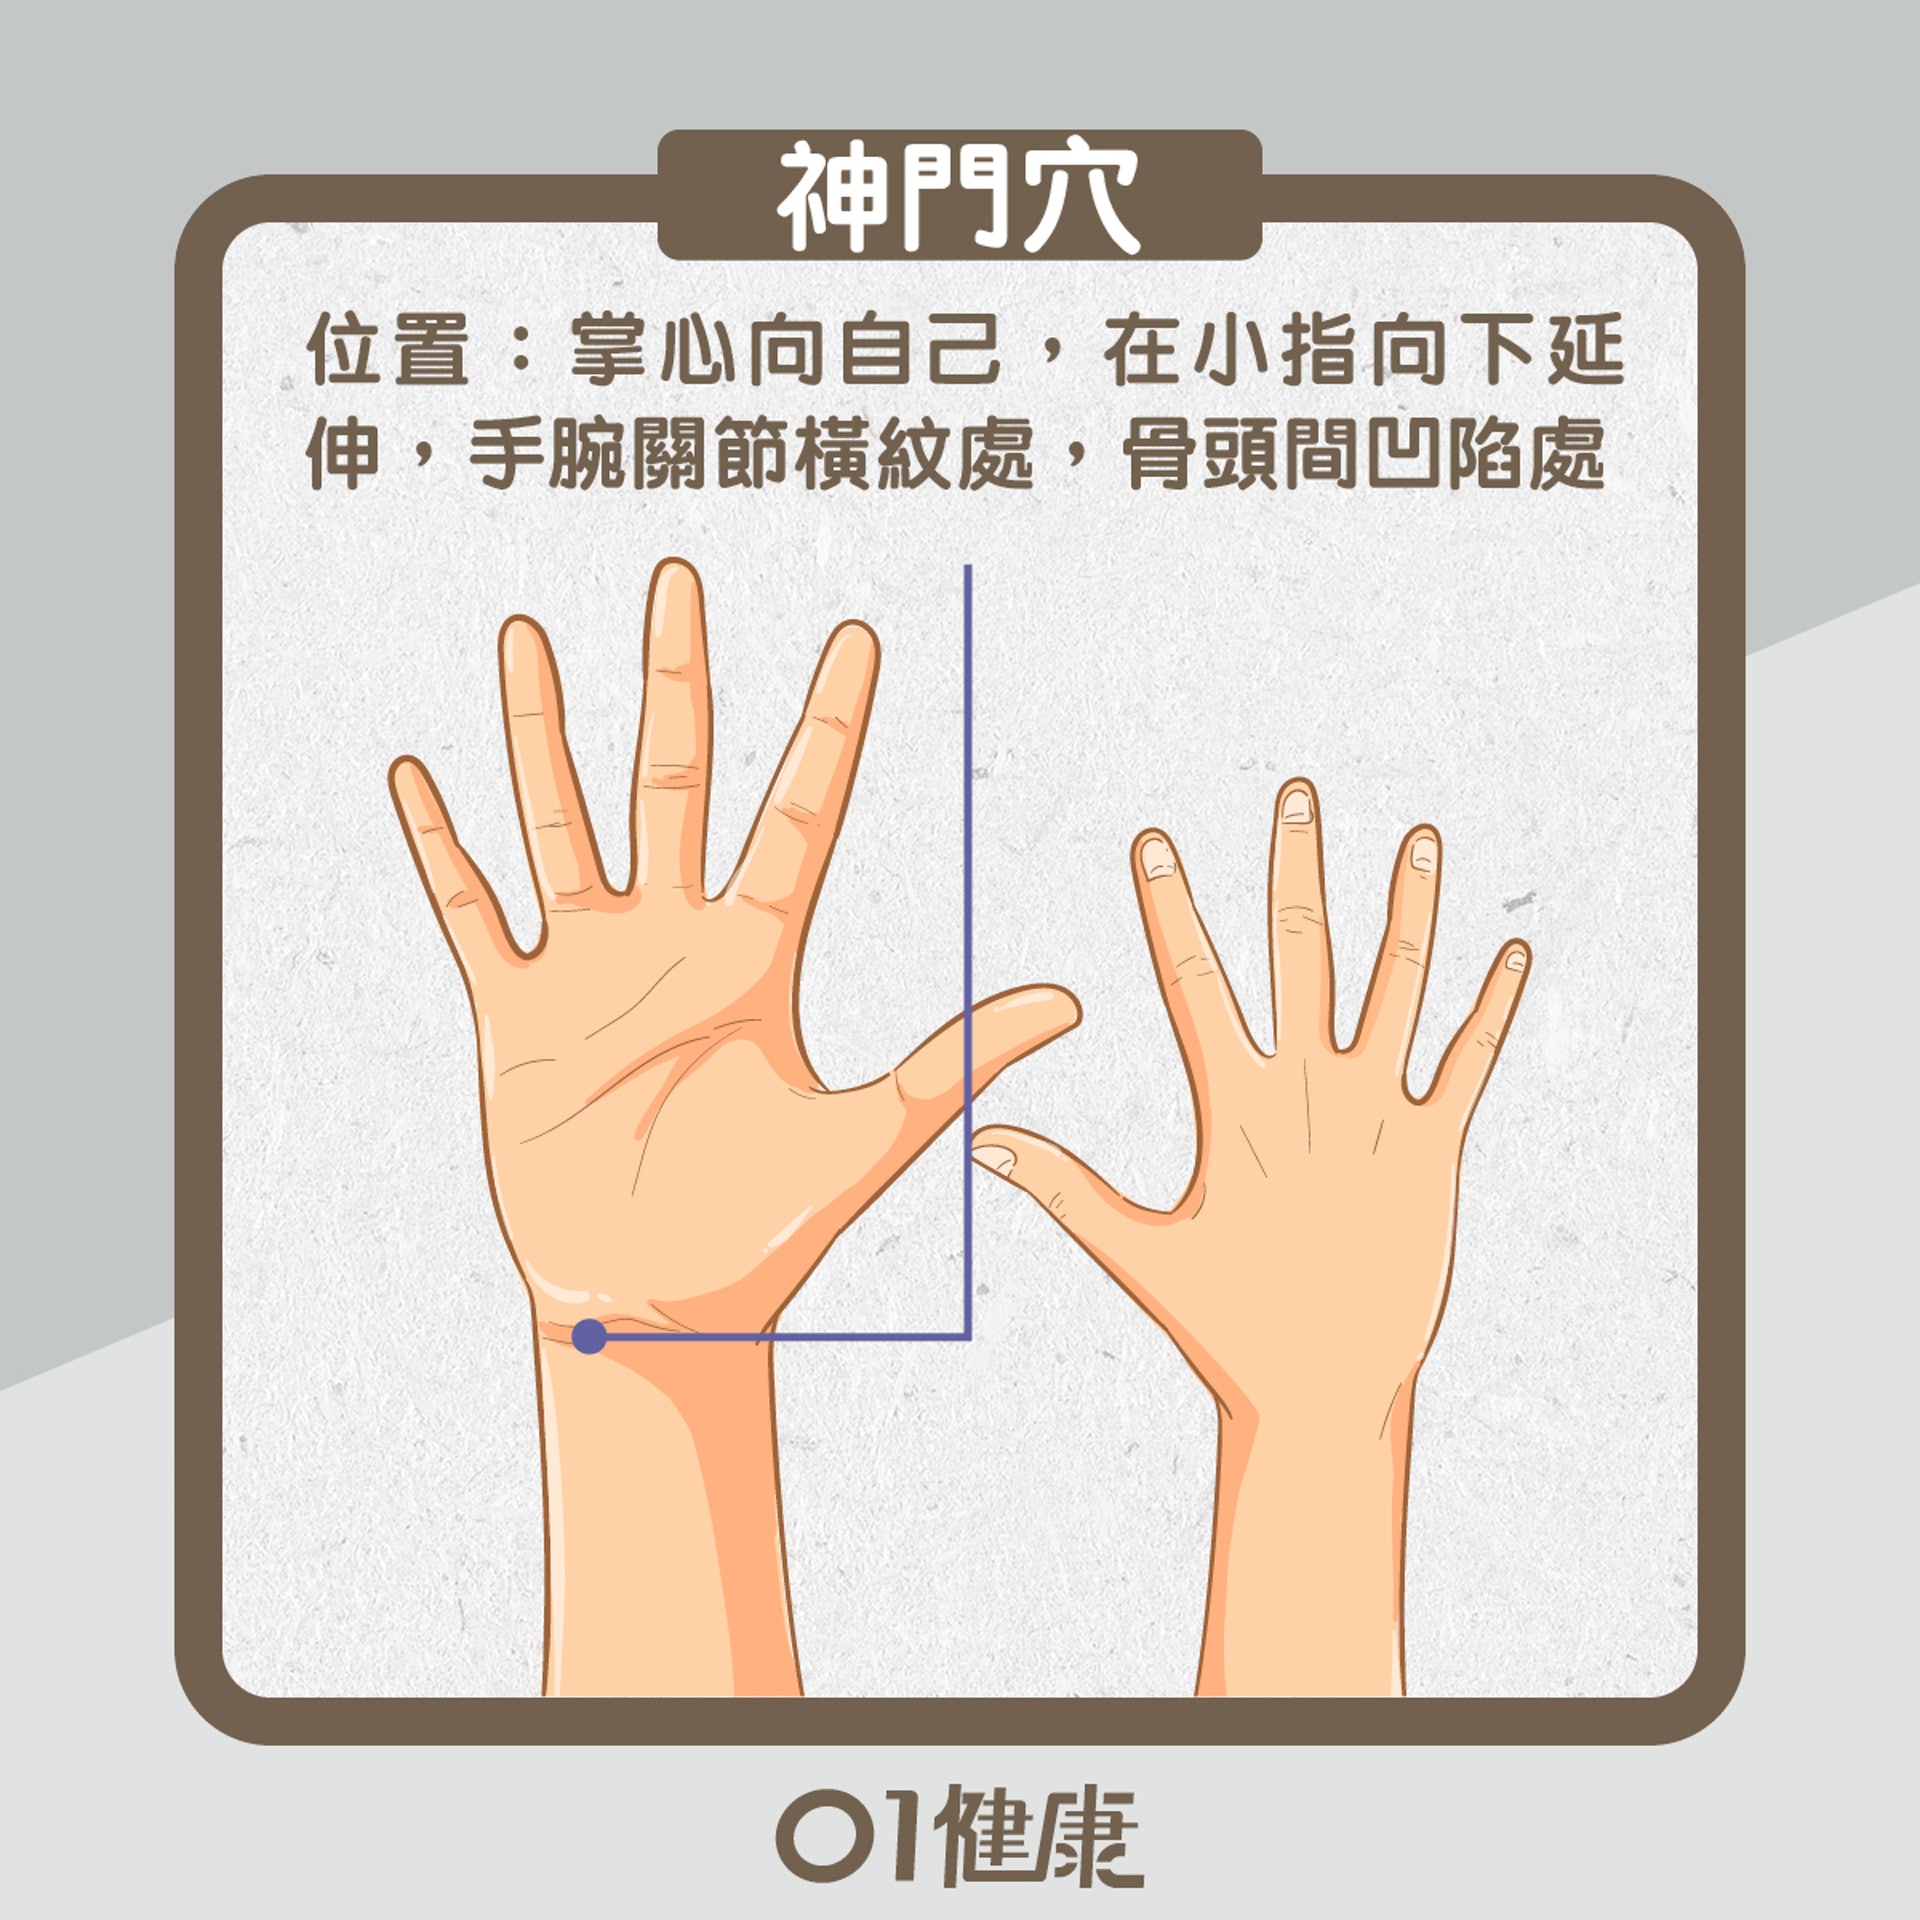 神門穴／位置：掌心向自己，在小指向下延伸，手腕關節橫紋處，骨頭間凹陷處（01製圖）